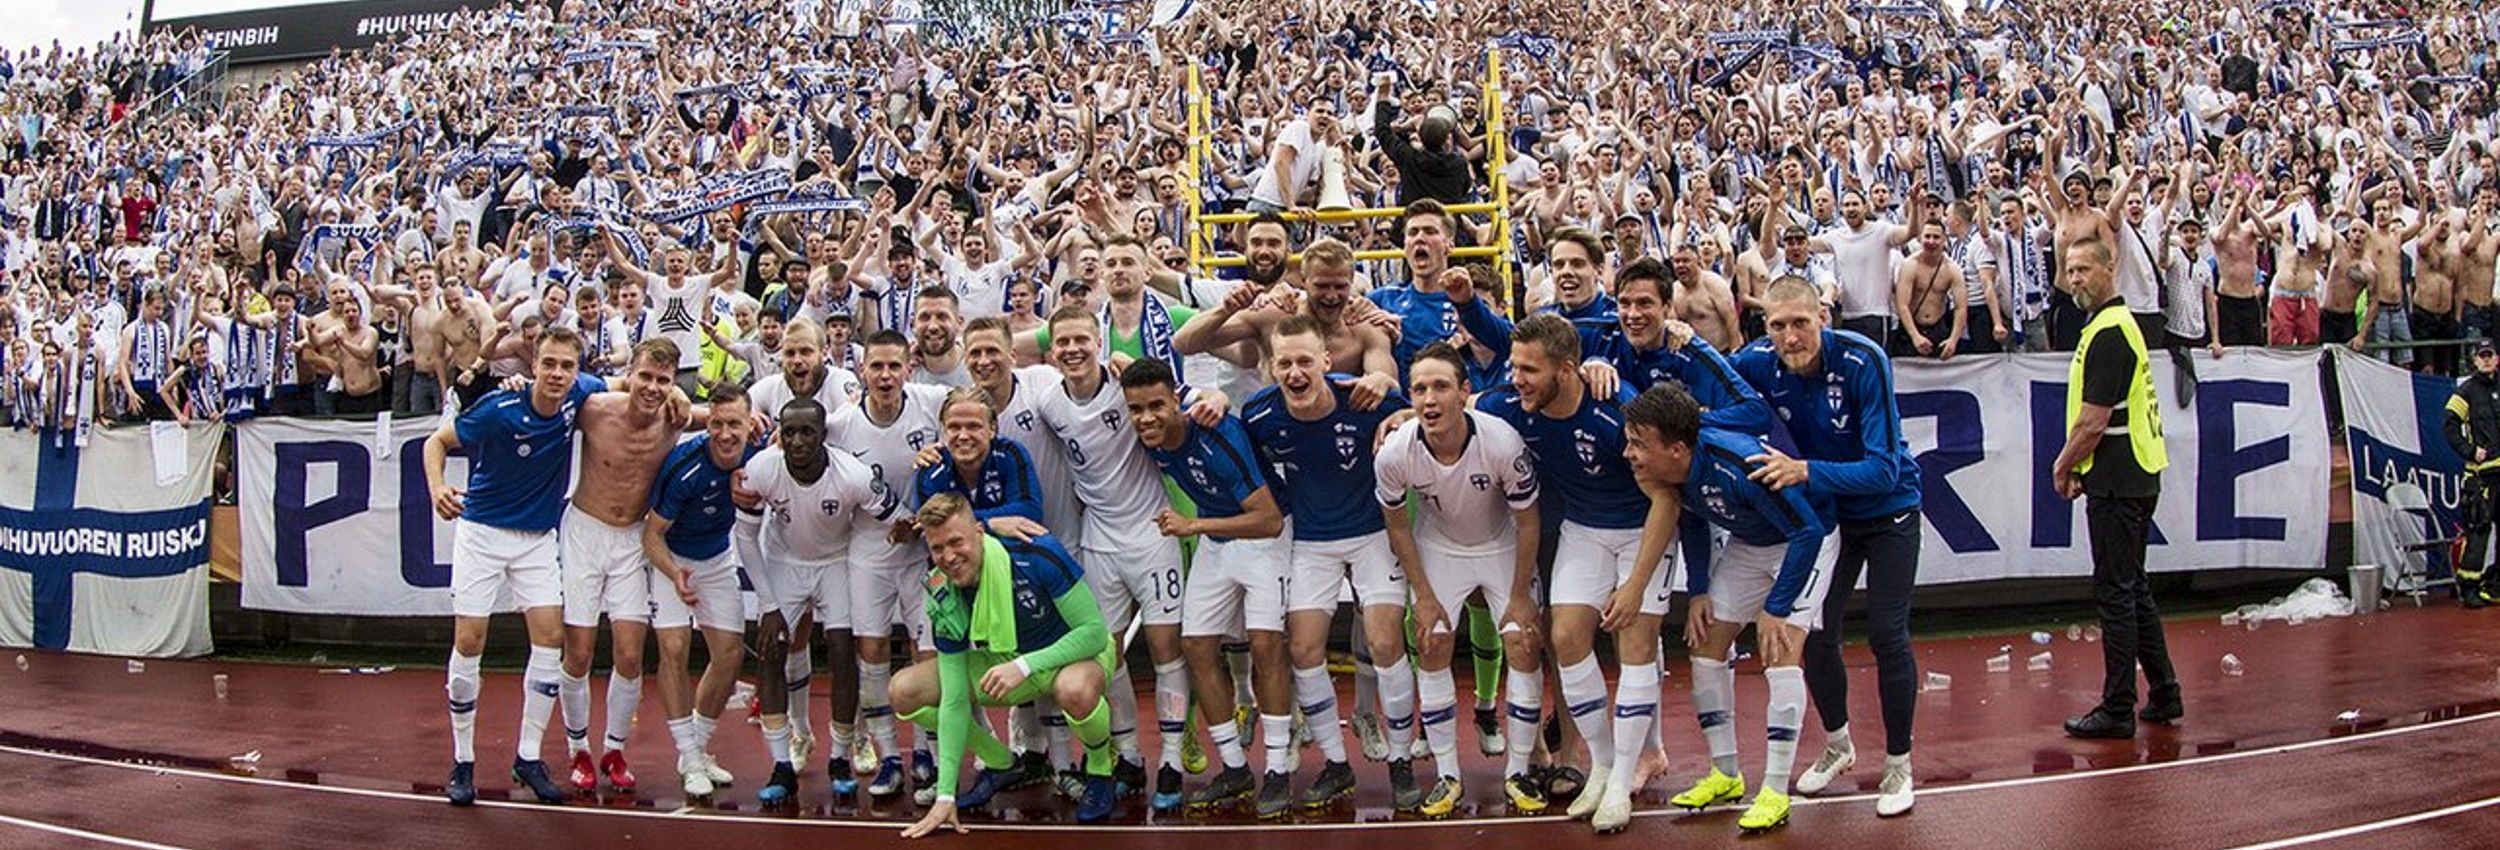 8.6.2019 Suomi - Bosnia EM-karsintaottelusta Ratinan Stadionilta Tampereelta. Ottelu on päättynyt Suomen voittoon 2-0 ja joukkue on tullut kiittämään Pohjoiskaarretta kannustuksesta. Tämä ottelu oli monille käännekohta matkalla EM-kisoihin.